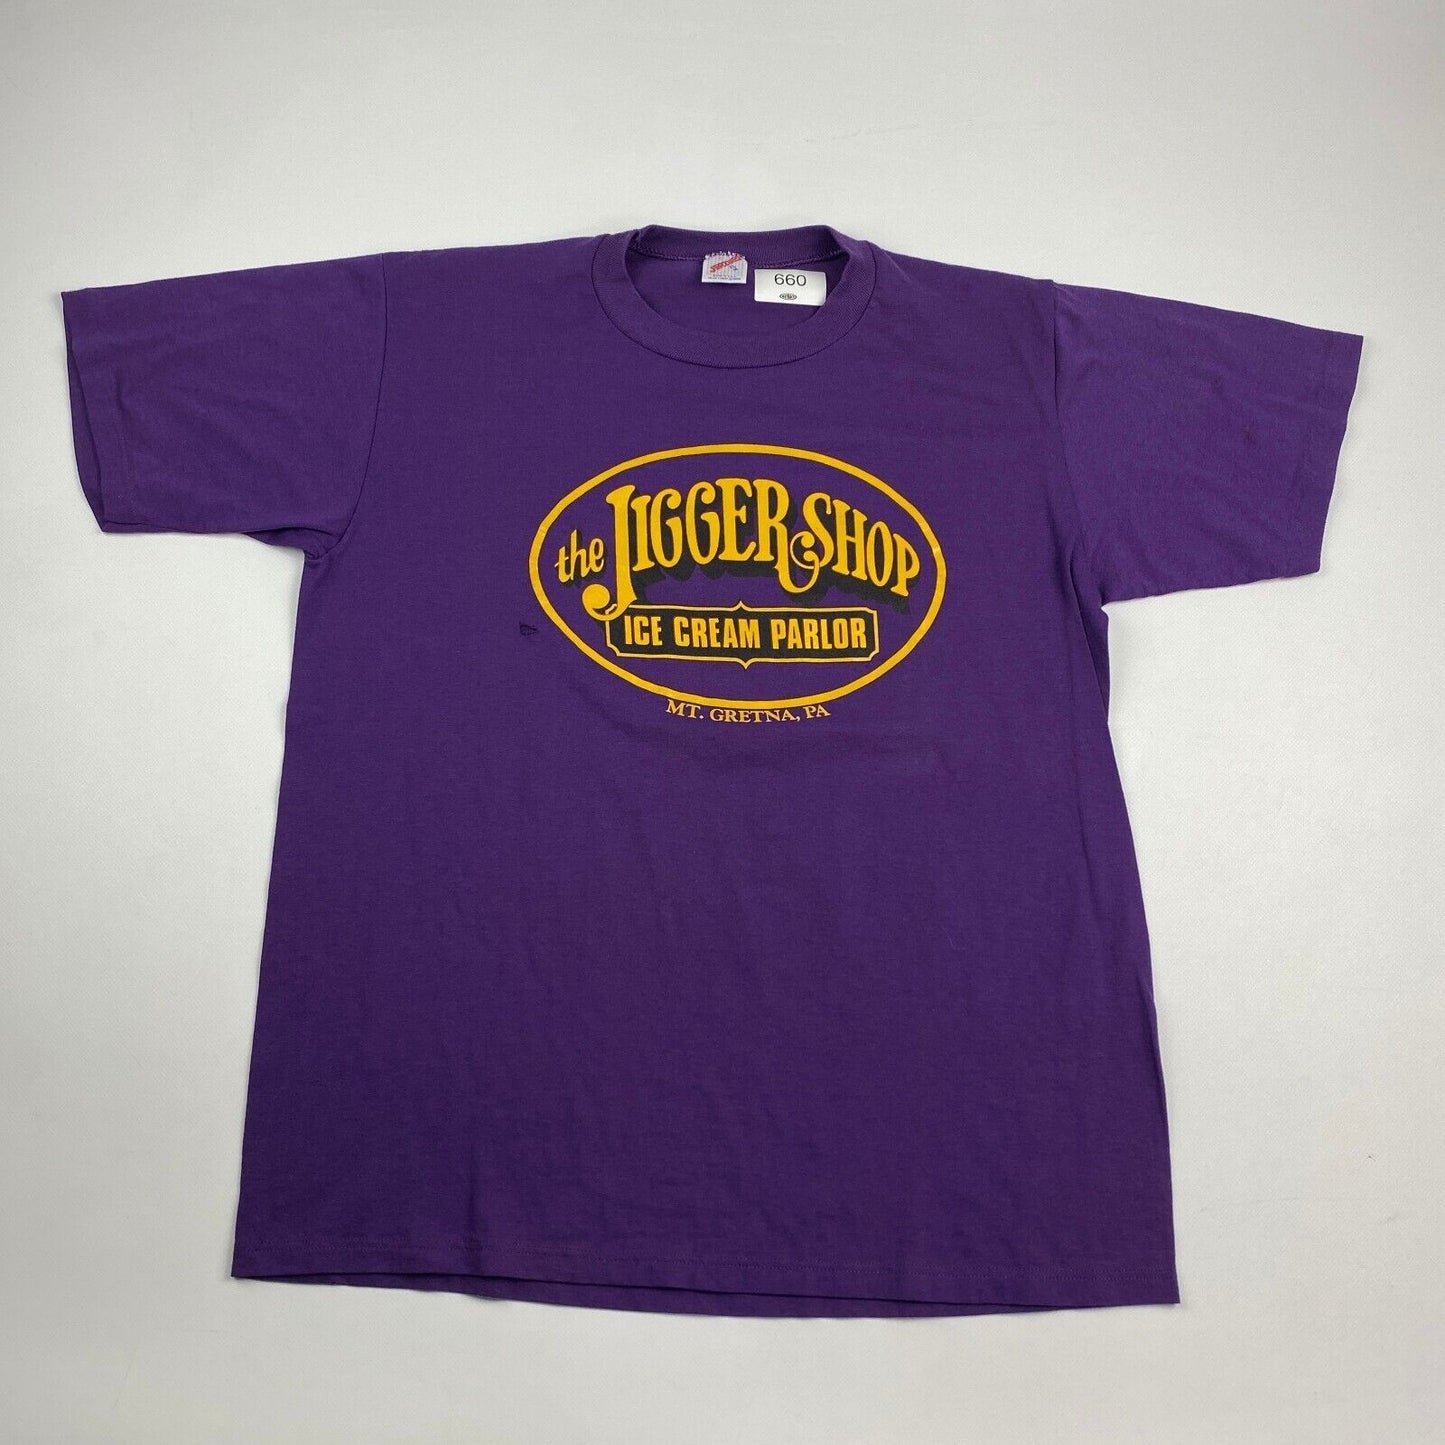 VINTAGE The Jigger Shop Ice Cream Parlour Purple T-Shirt sz Large Men